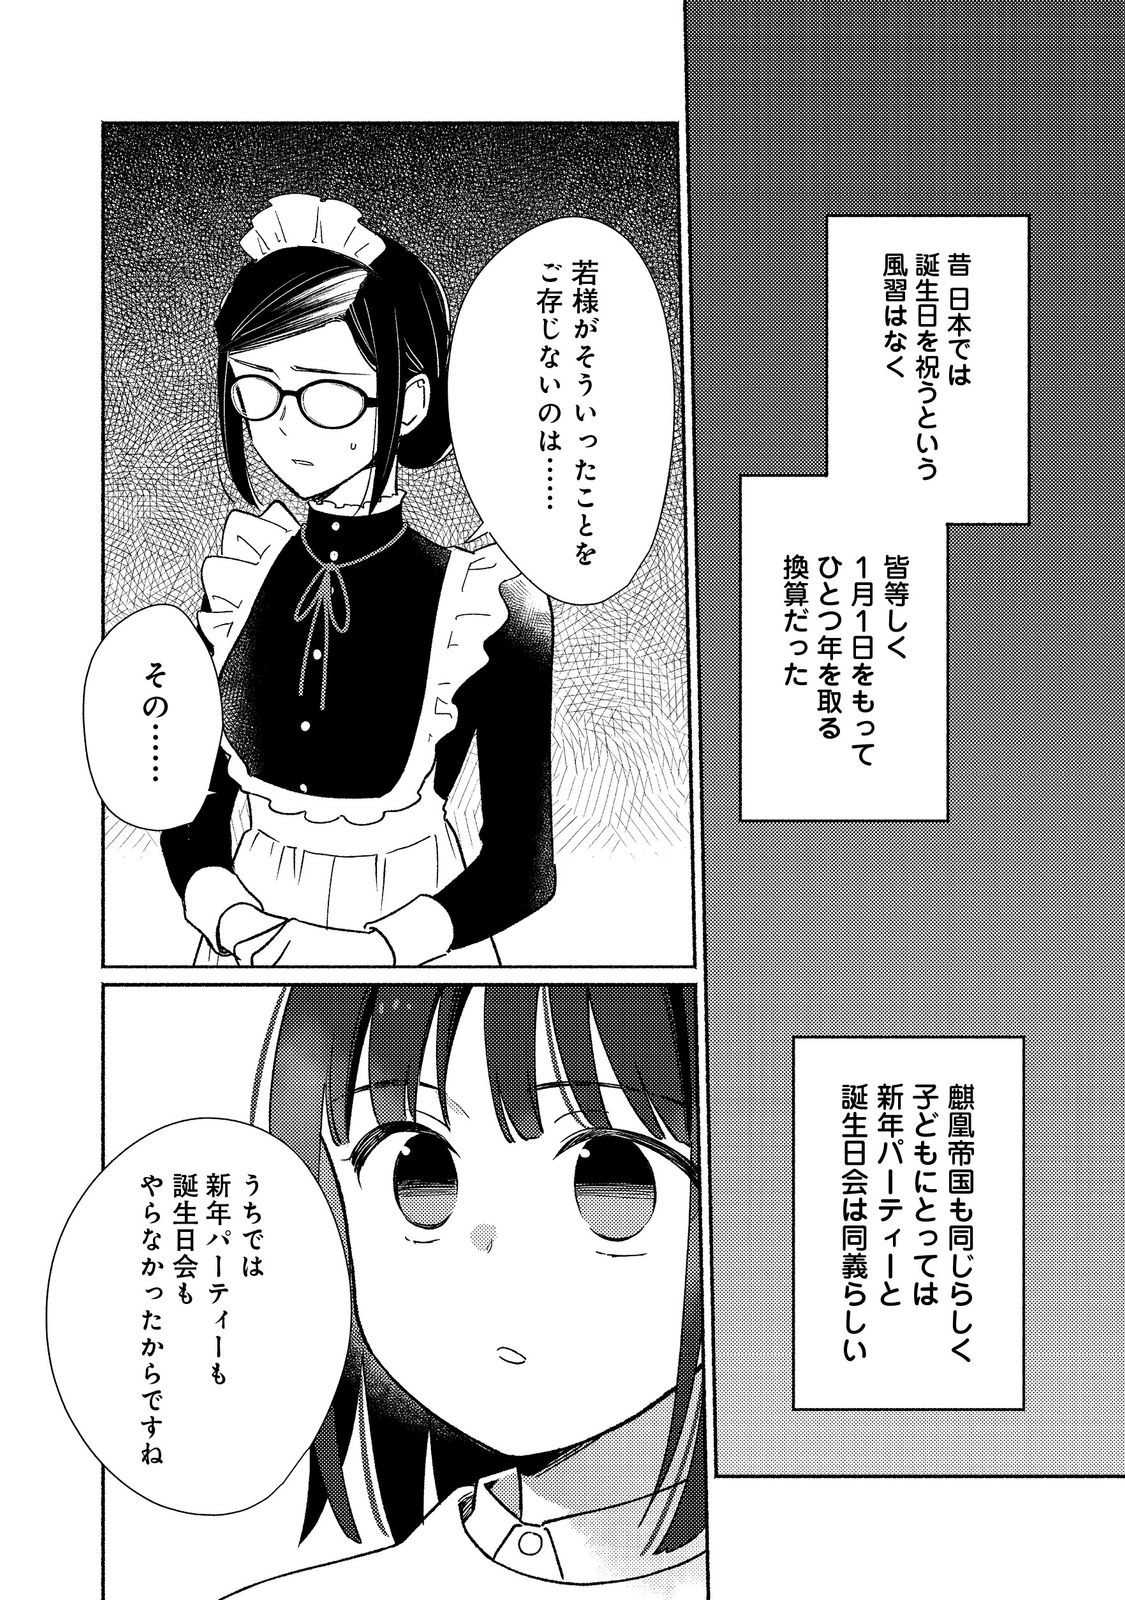 Shirobuta Kizoku desu ga Zense no Kioku ga Haeta node Hiyoko na Otouto Sodatemasu - Chapter 24.1 - Page 2